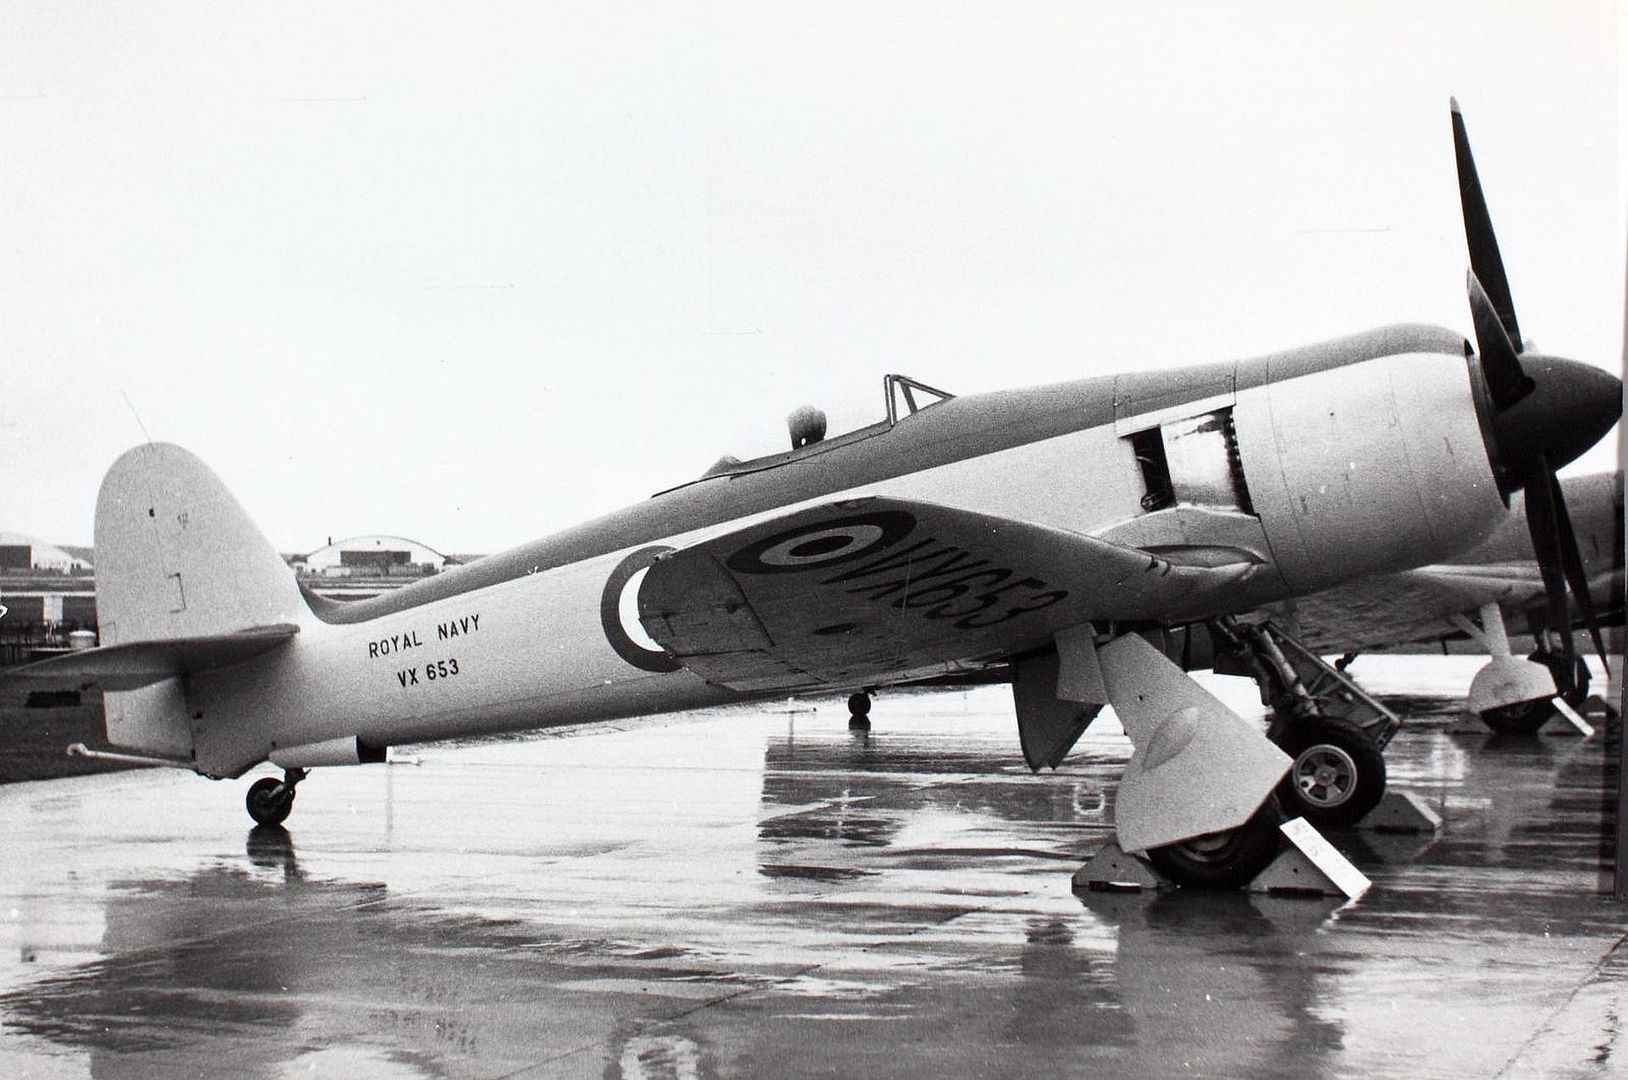 Hawker Sea Fury FB Mk 11 VX653